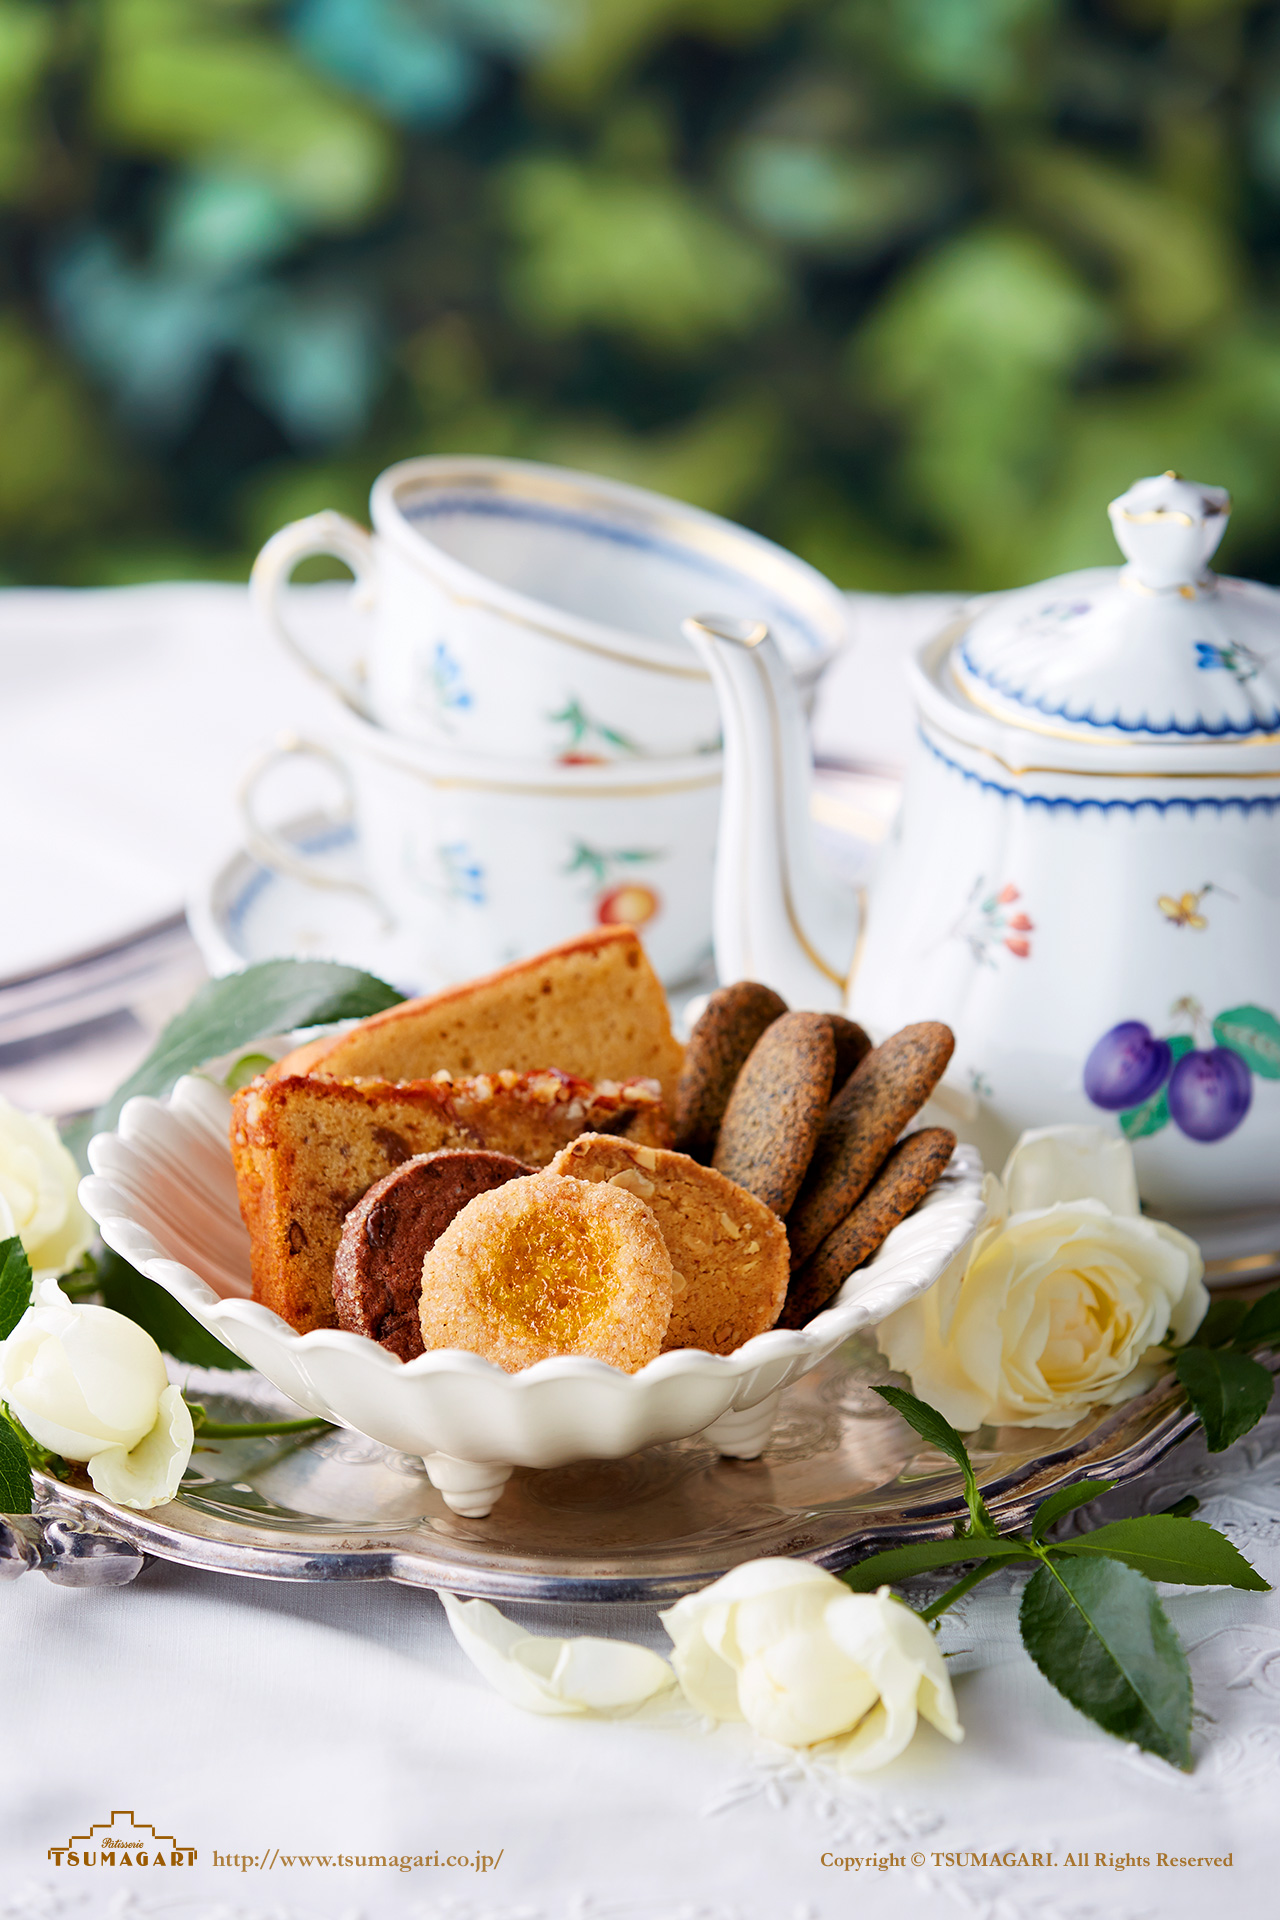 壁紙ダウンロード 紅茶が似合う優雅な午後 ケーキハウス ツマガリのオンラインショップ